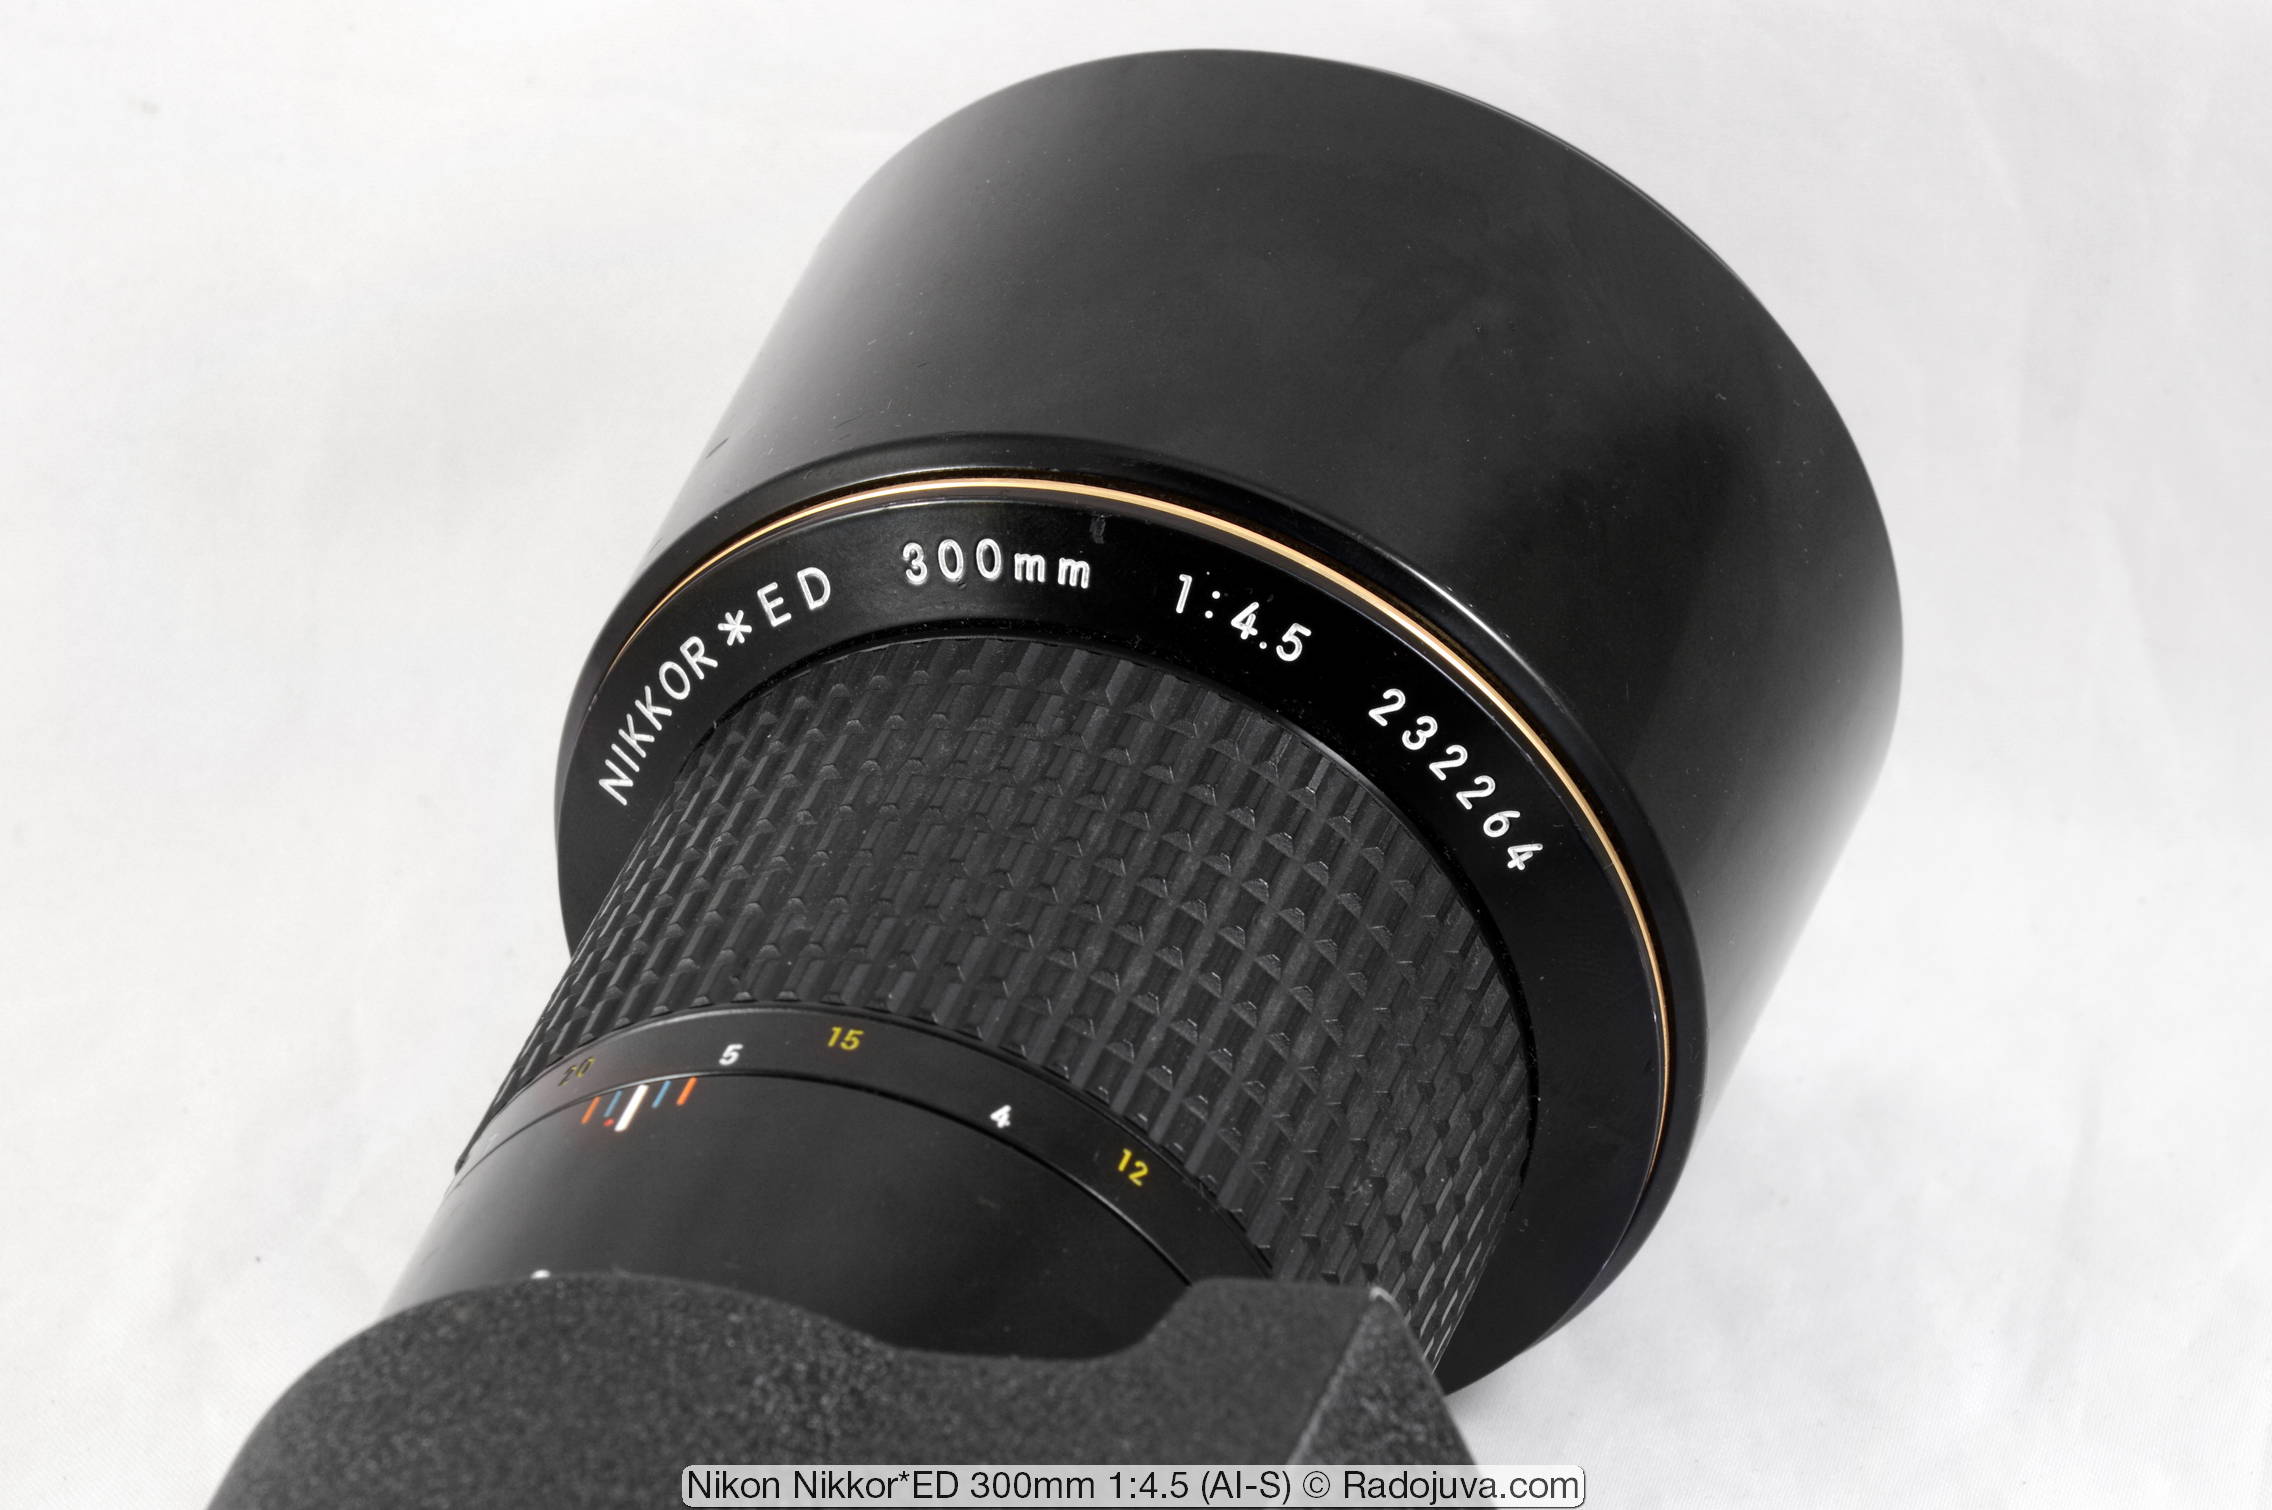 Nikon Nikkor*ED 300mm 1:4.5 (AI-S